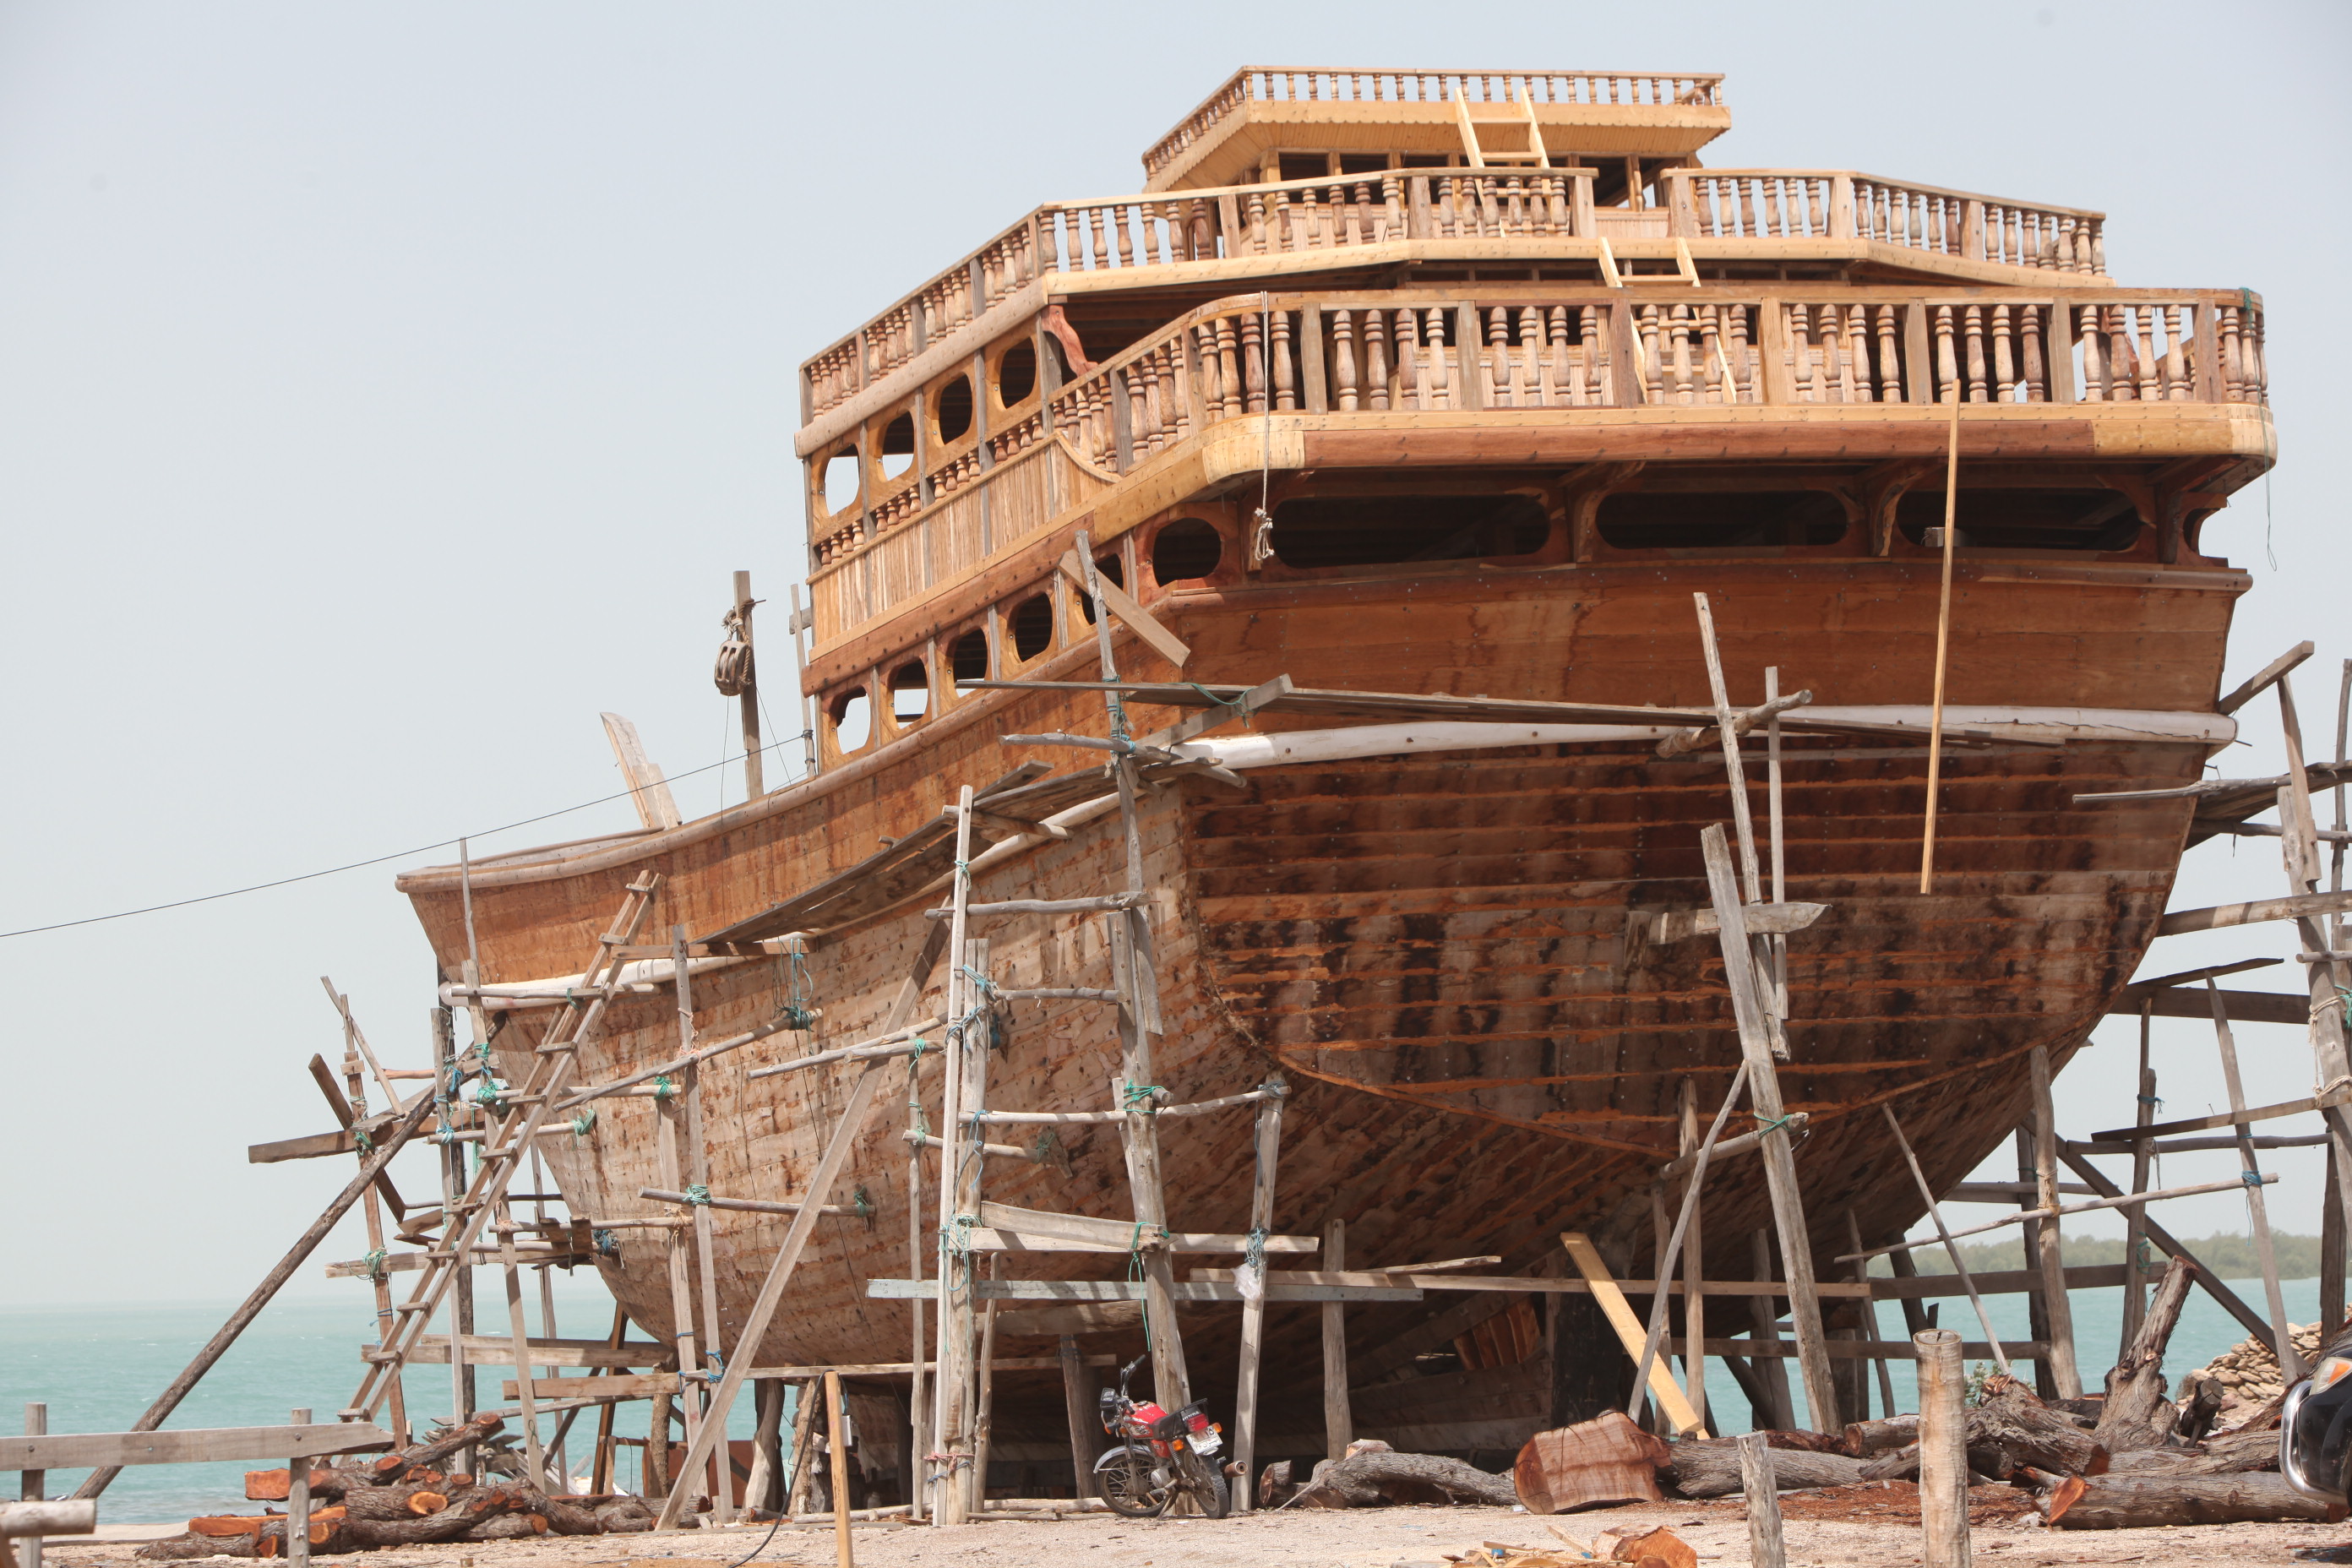 島内には、木造船の造船所が立地しています。木造船の製造・操舵の技術は、UNESCOの無形文化遺産に指定されています。